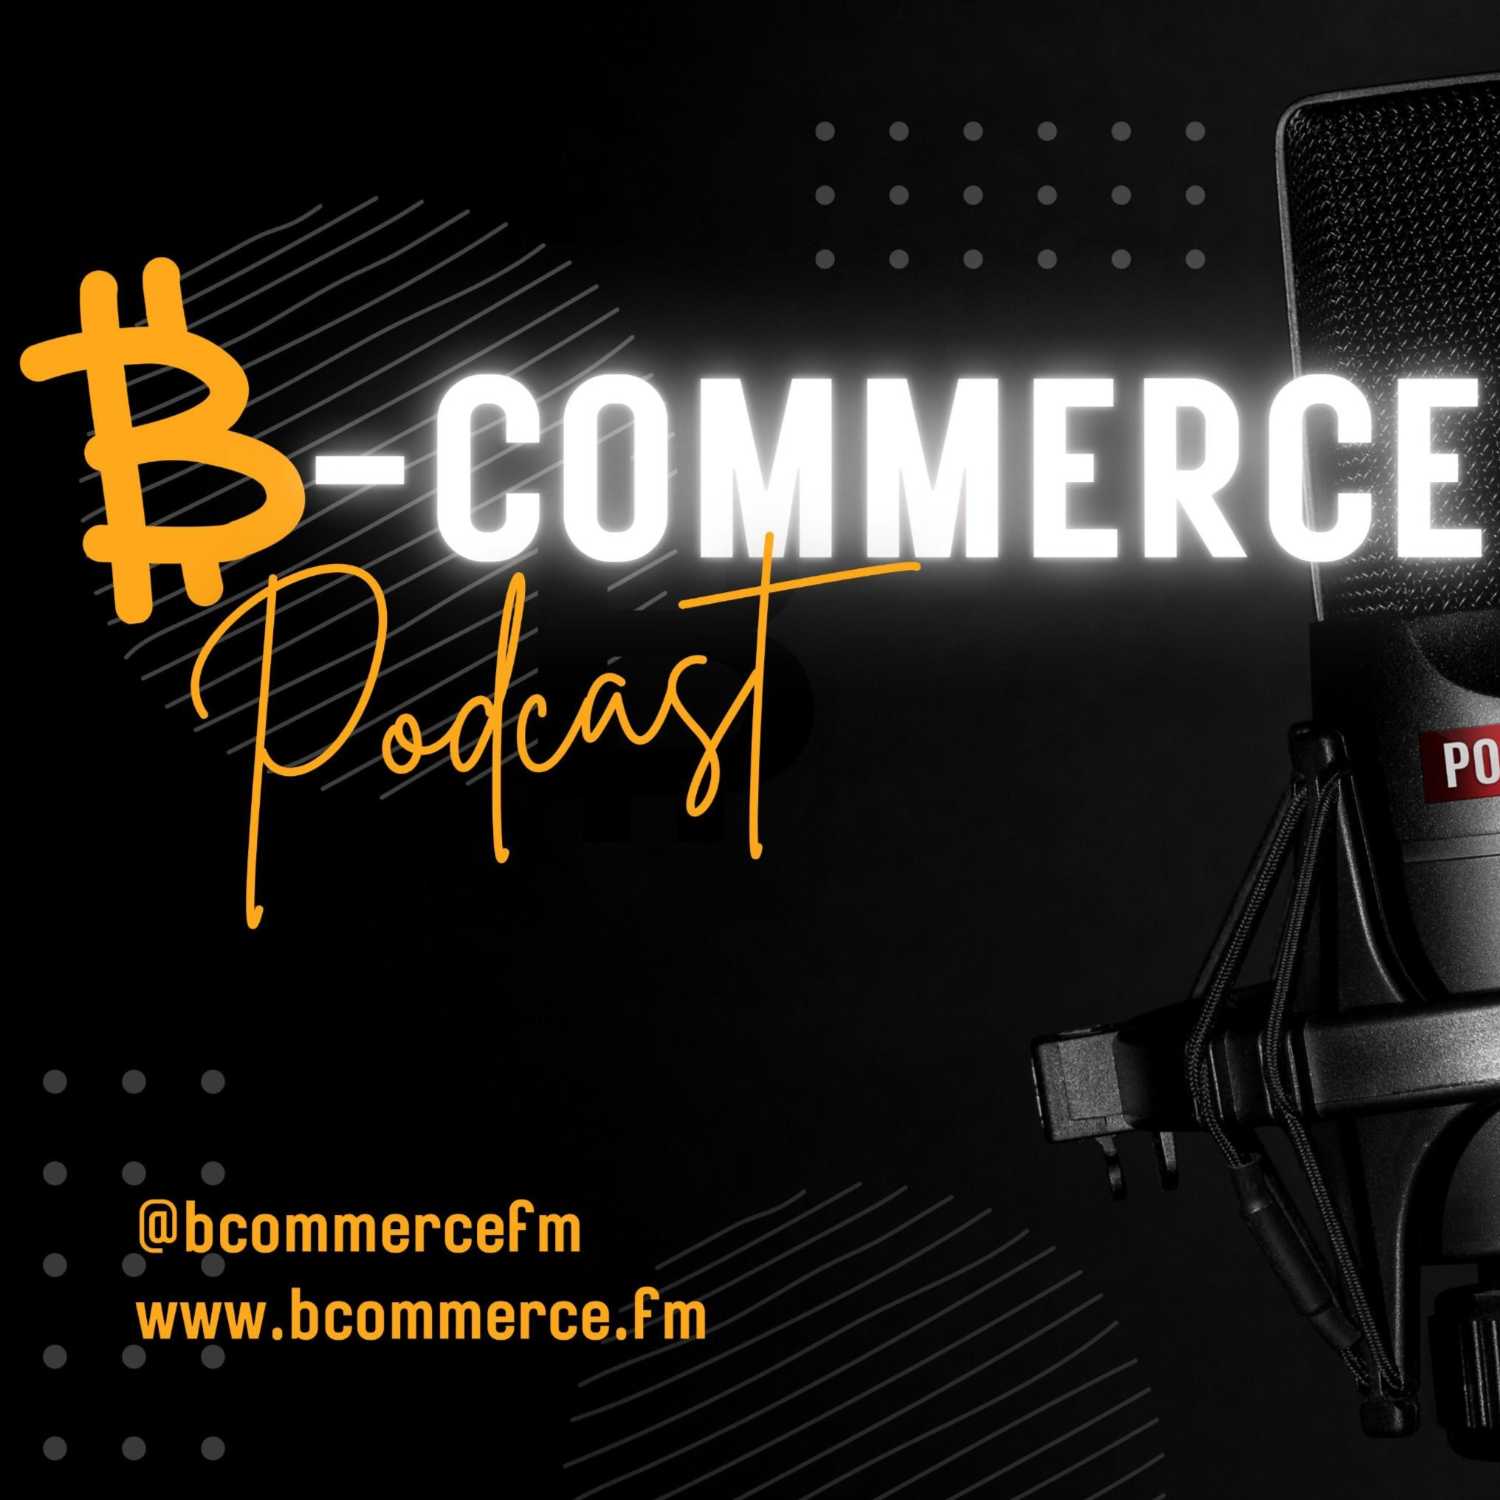 Bcommerce Podcast